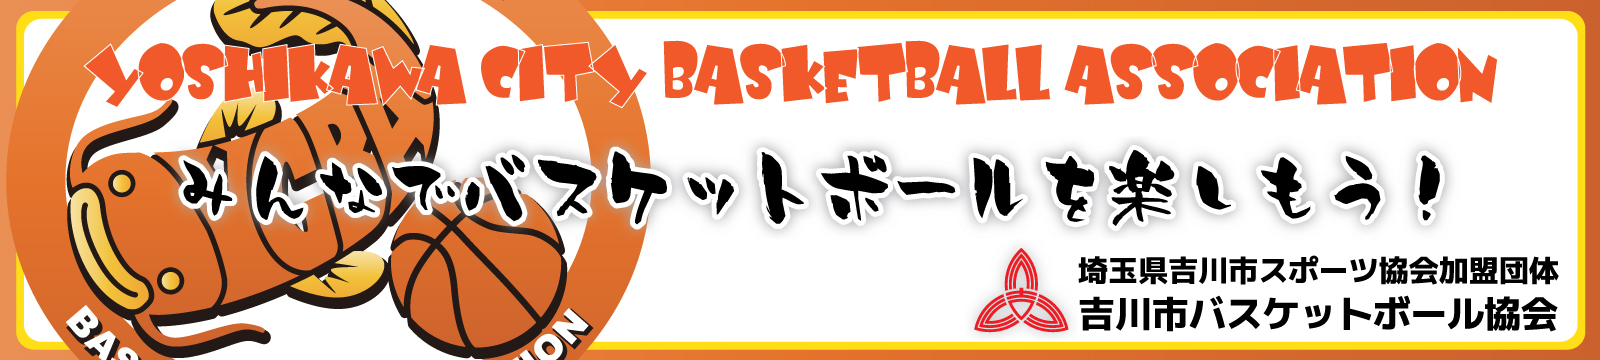 埼玉県吉川市バスケットボール協会